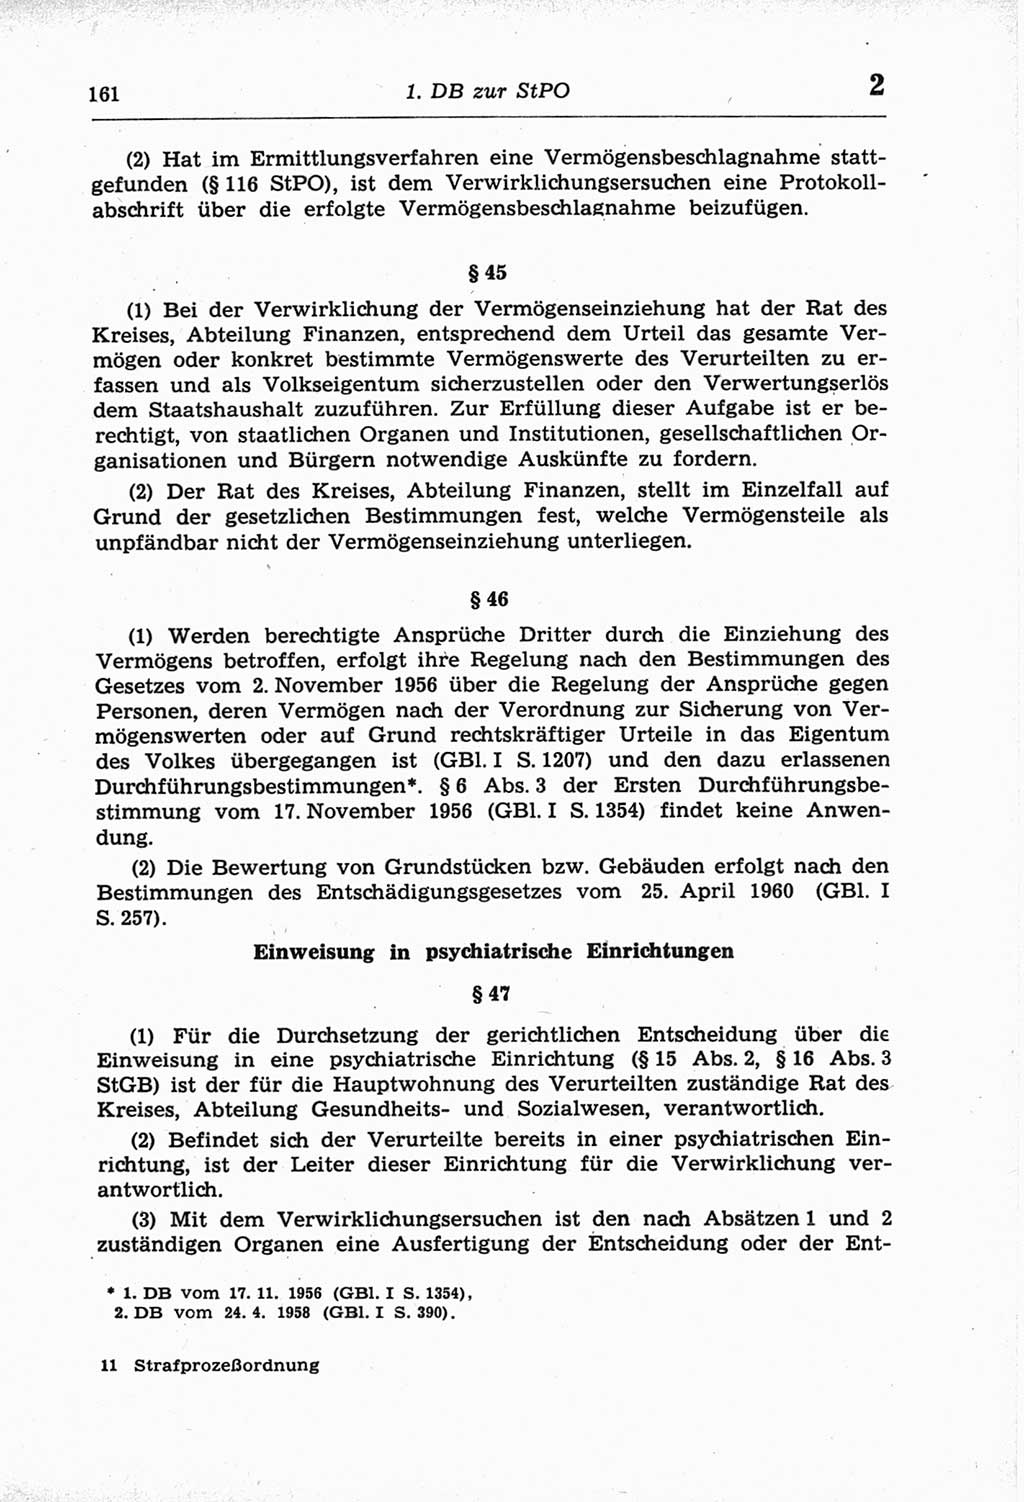 Strafprozeßordnung (StPO) der Deutschen Demokratischen Republik (DDR) und angrenzende Gesetze und Bestimmungen 1968, Seite 161 (StPO Ges. Bstgn. DDR 1968, S. 161)